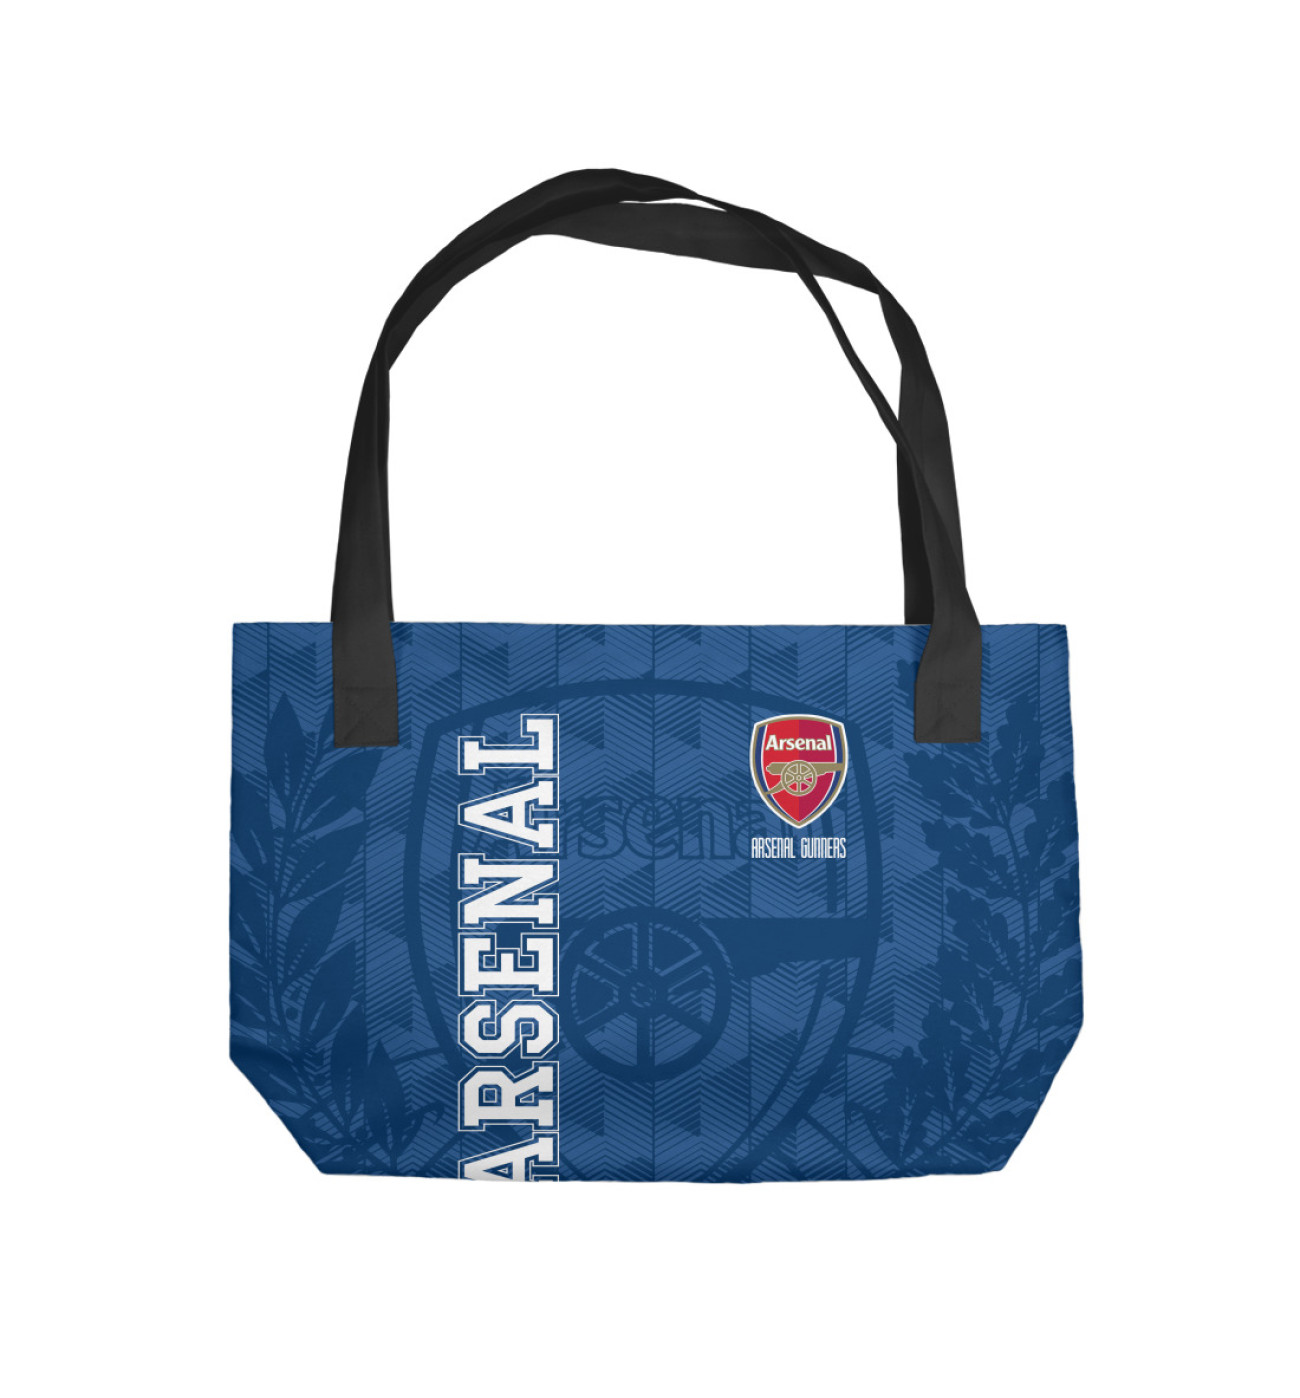 Пляжная сумка FC Arsenal, артикул: ARS-811723-sup